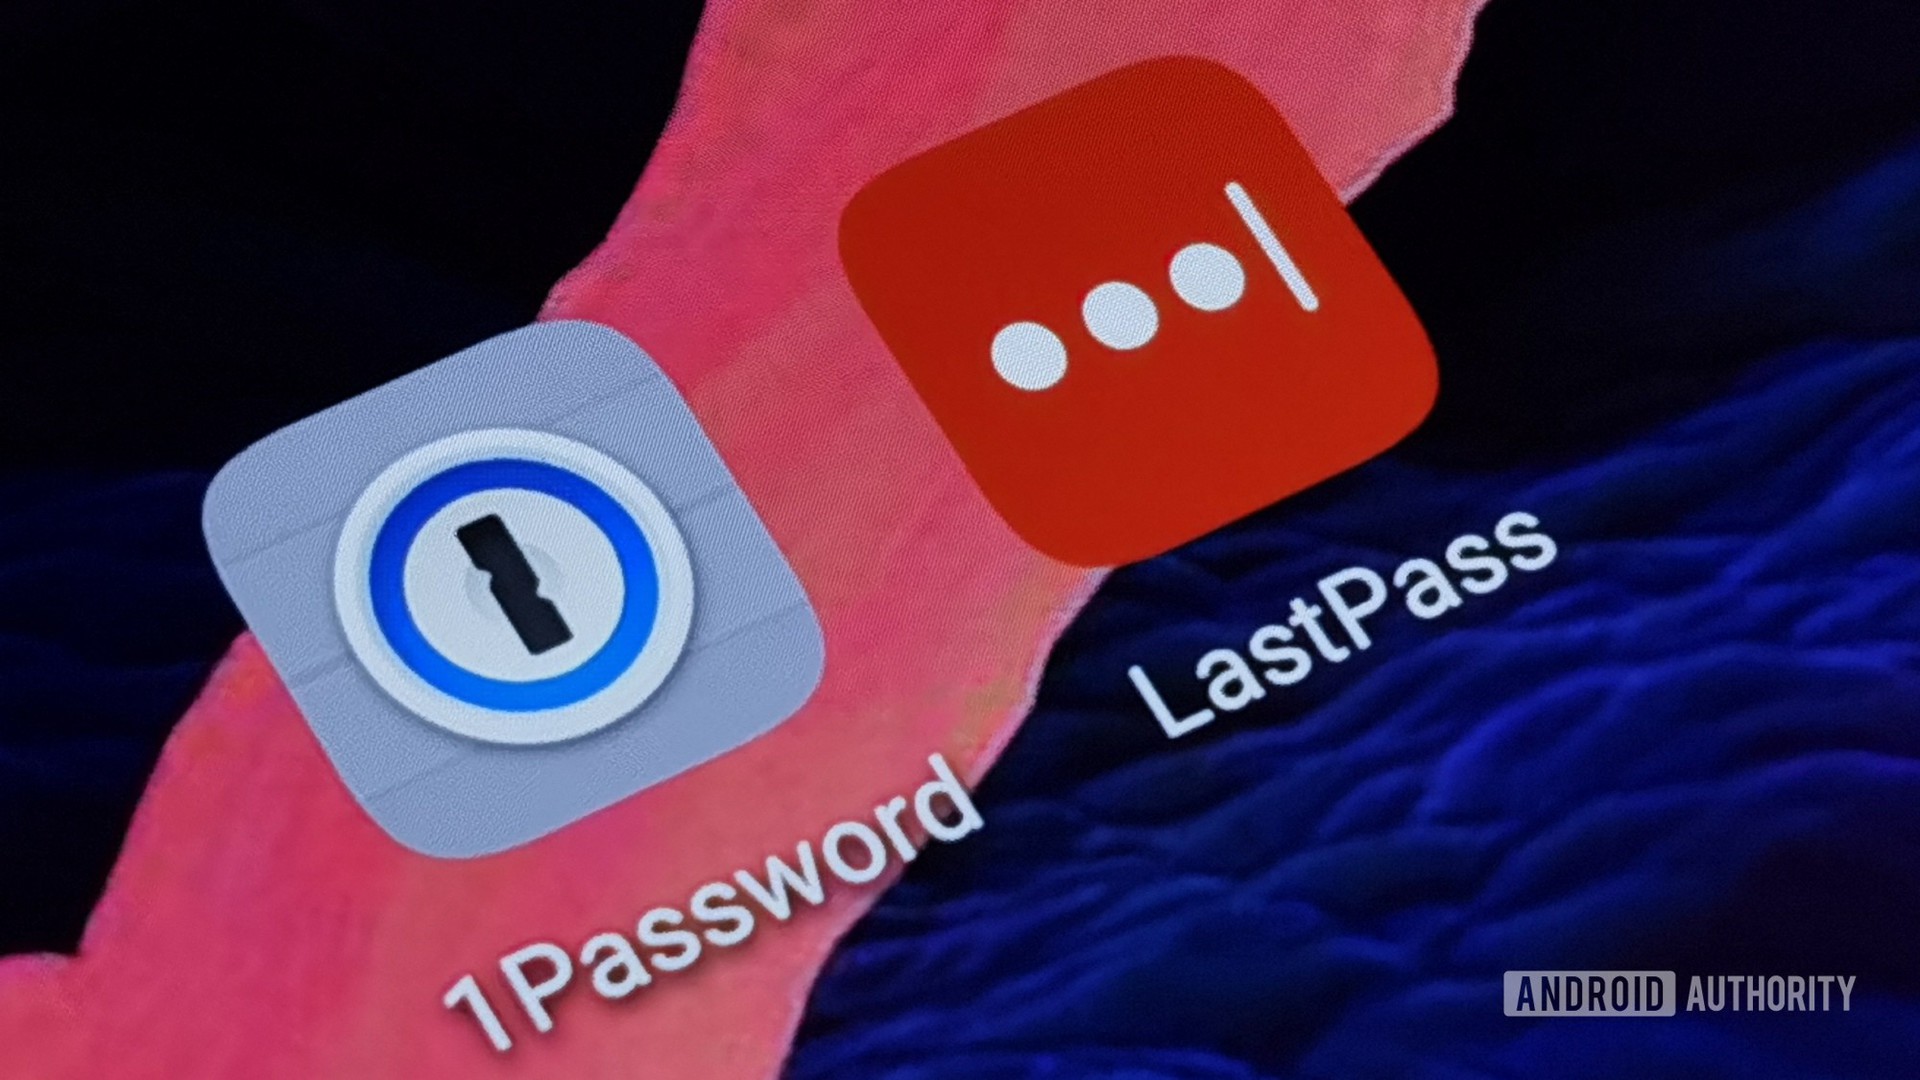 1password vs lastpass - Show hidden passwords